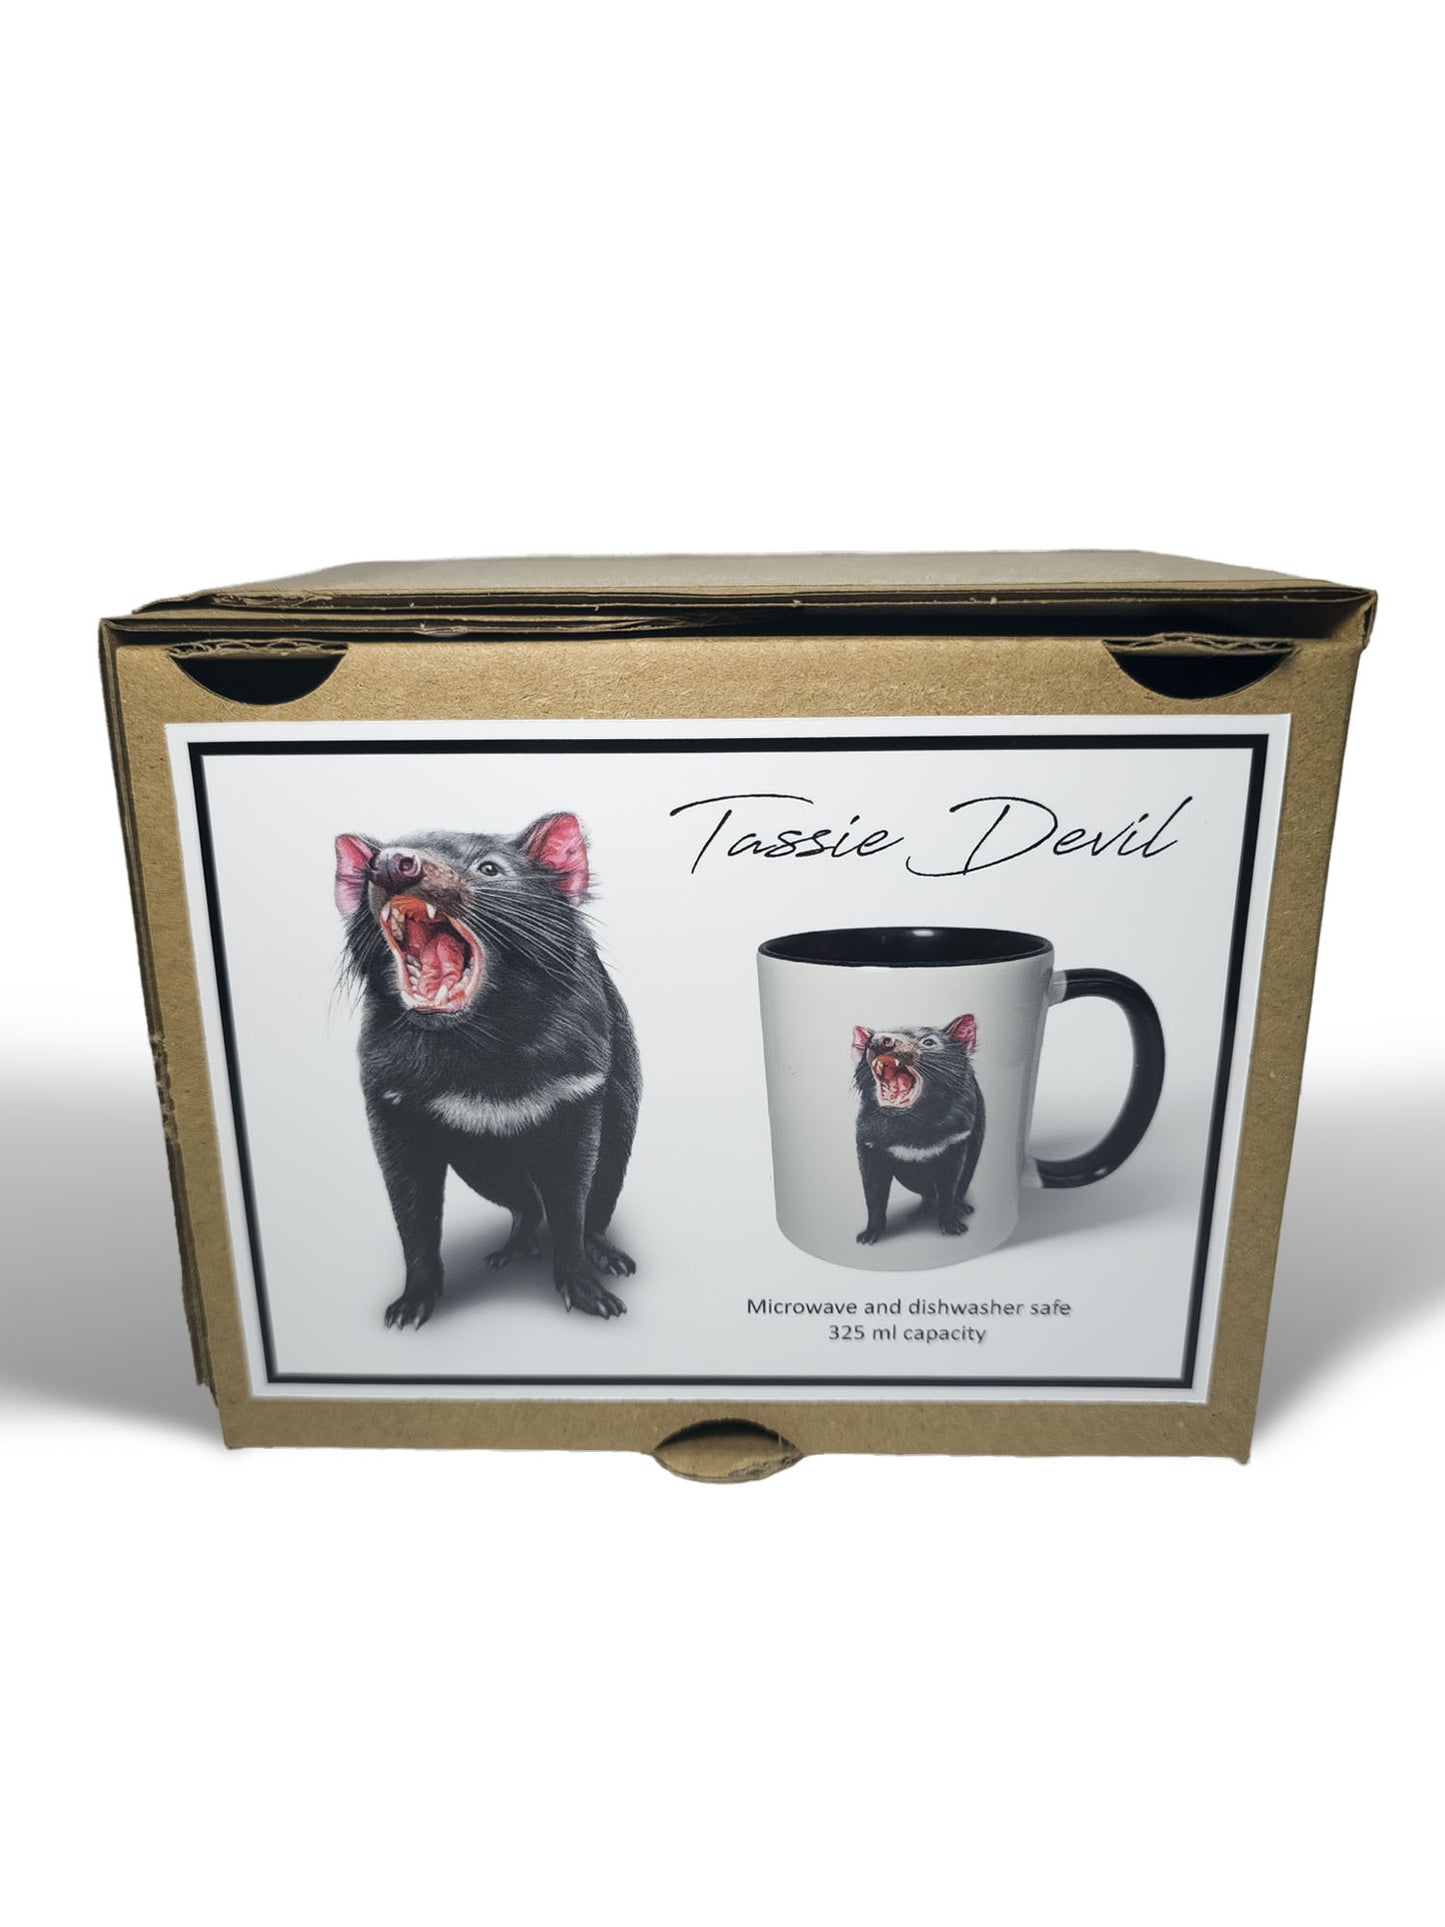 Tassie Devil ceramic mug